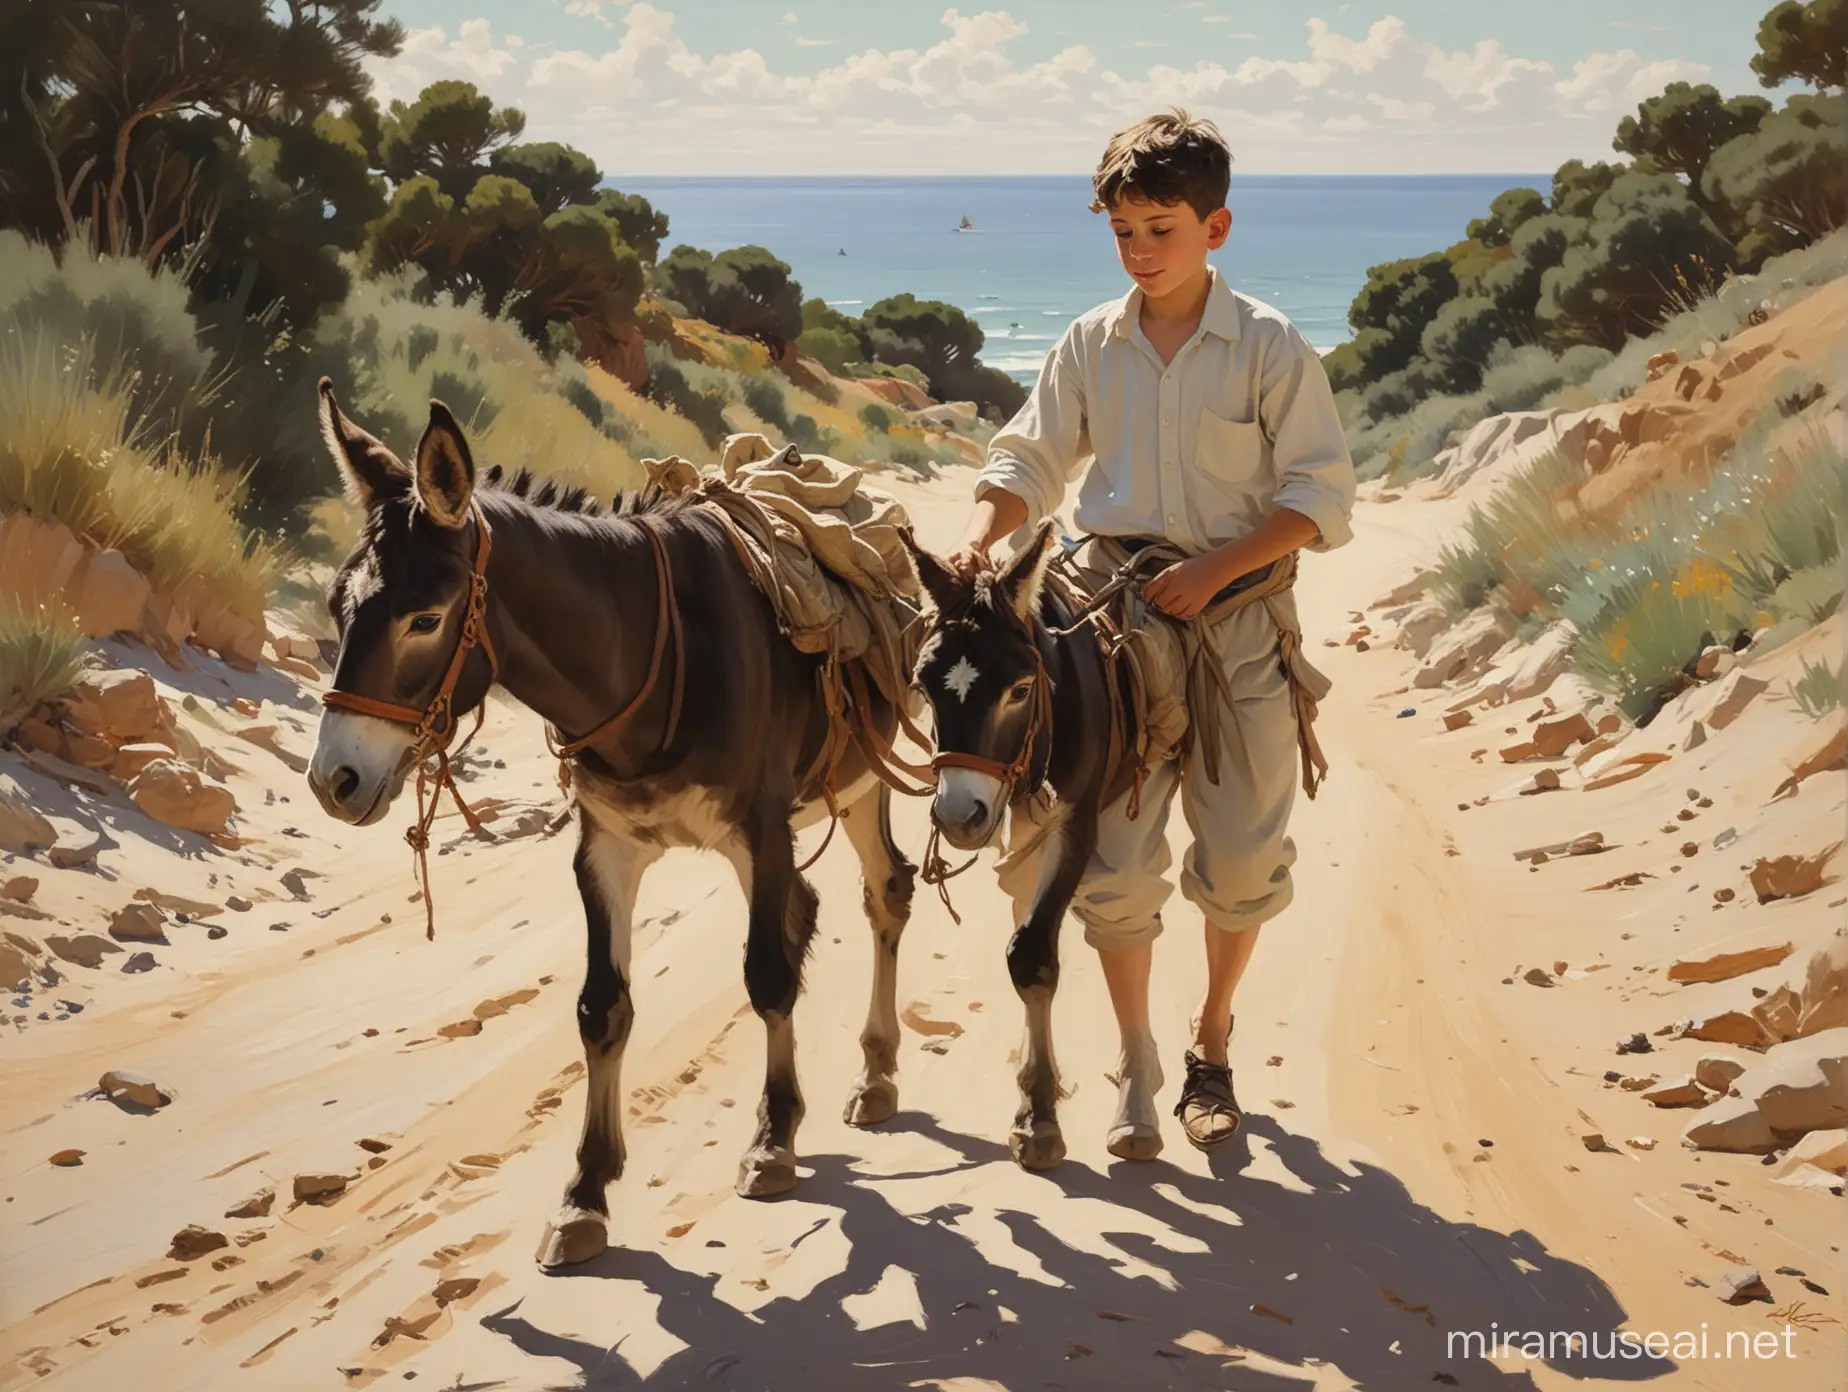 Sunlit Seaside Stroll Sorolla Style Boy with Donkey